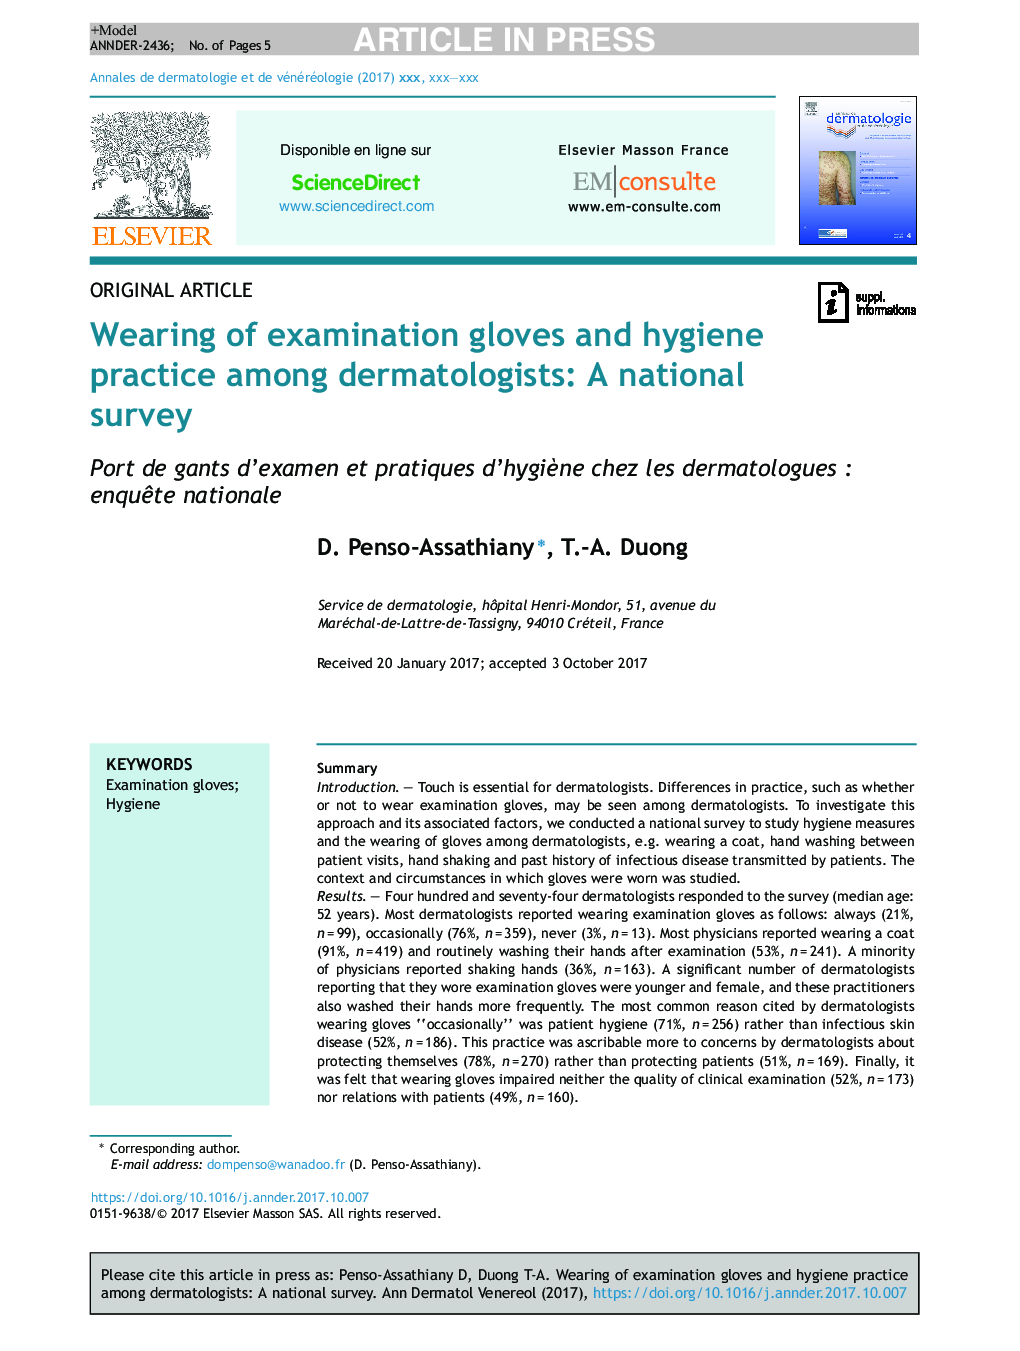 استفاده از دستکش معاینه و عمل بهداشت در میان متخصصین پوست: یک نظرسنجی ملی 